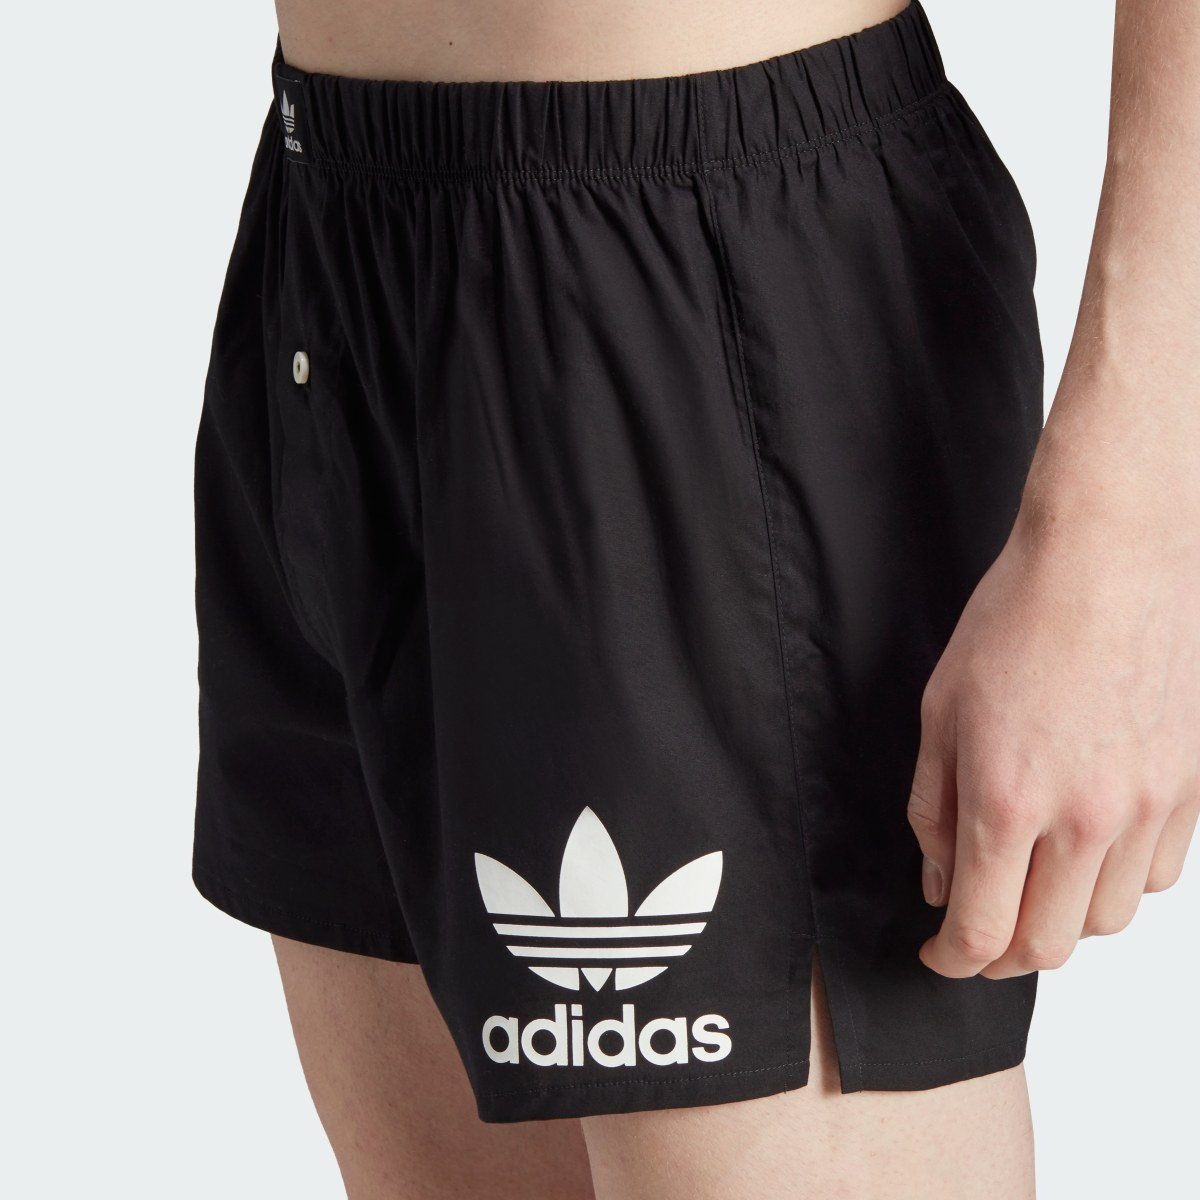 Adidas Boxers de Algodão Comfort Core – 2 pares. 7